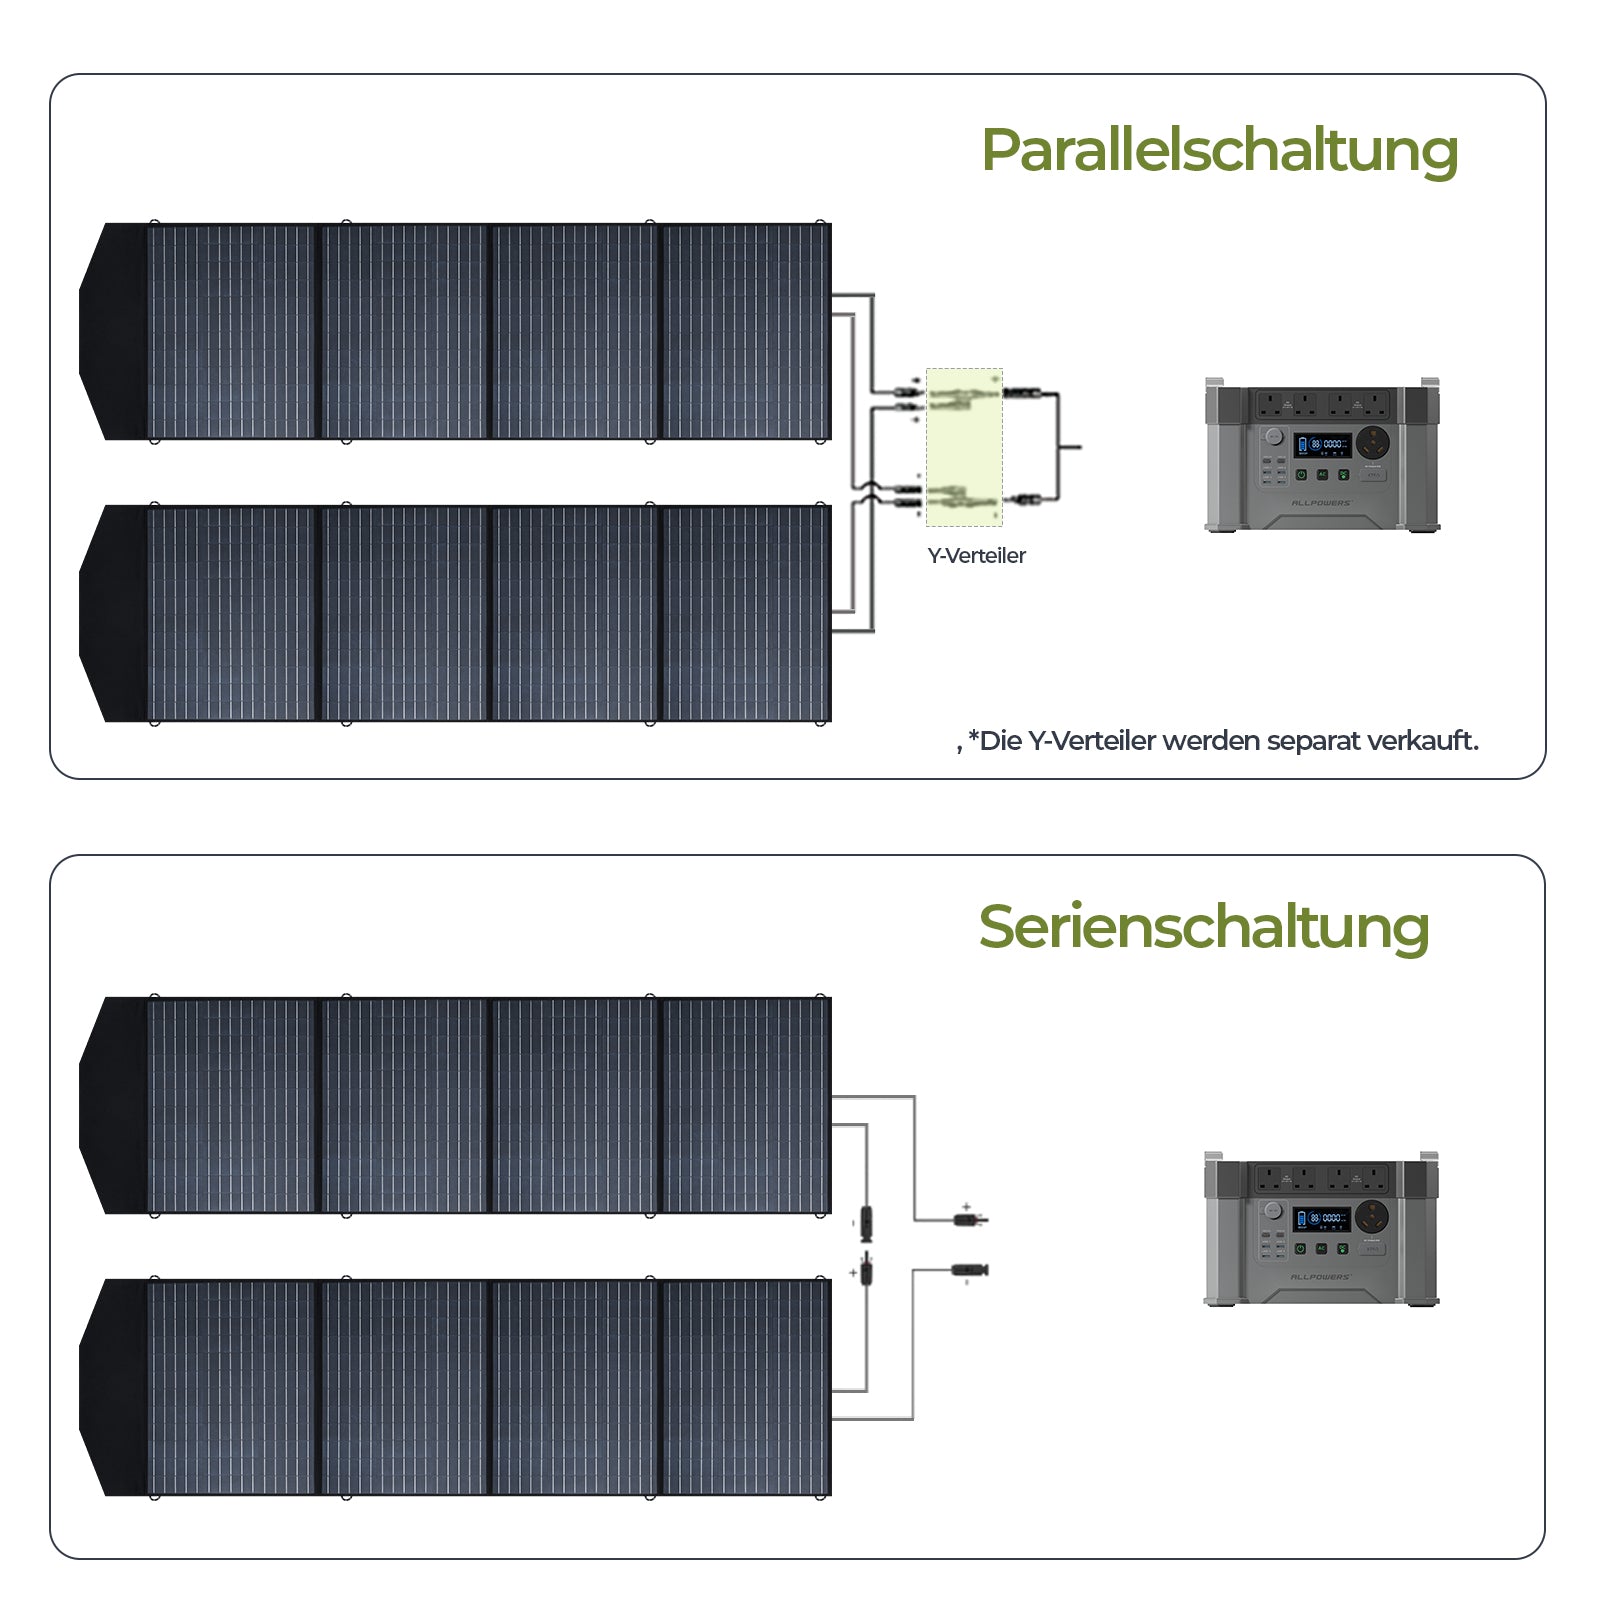 SP033-200W-foldable-solar-panel-parallel-connection-1600-DE.jpg